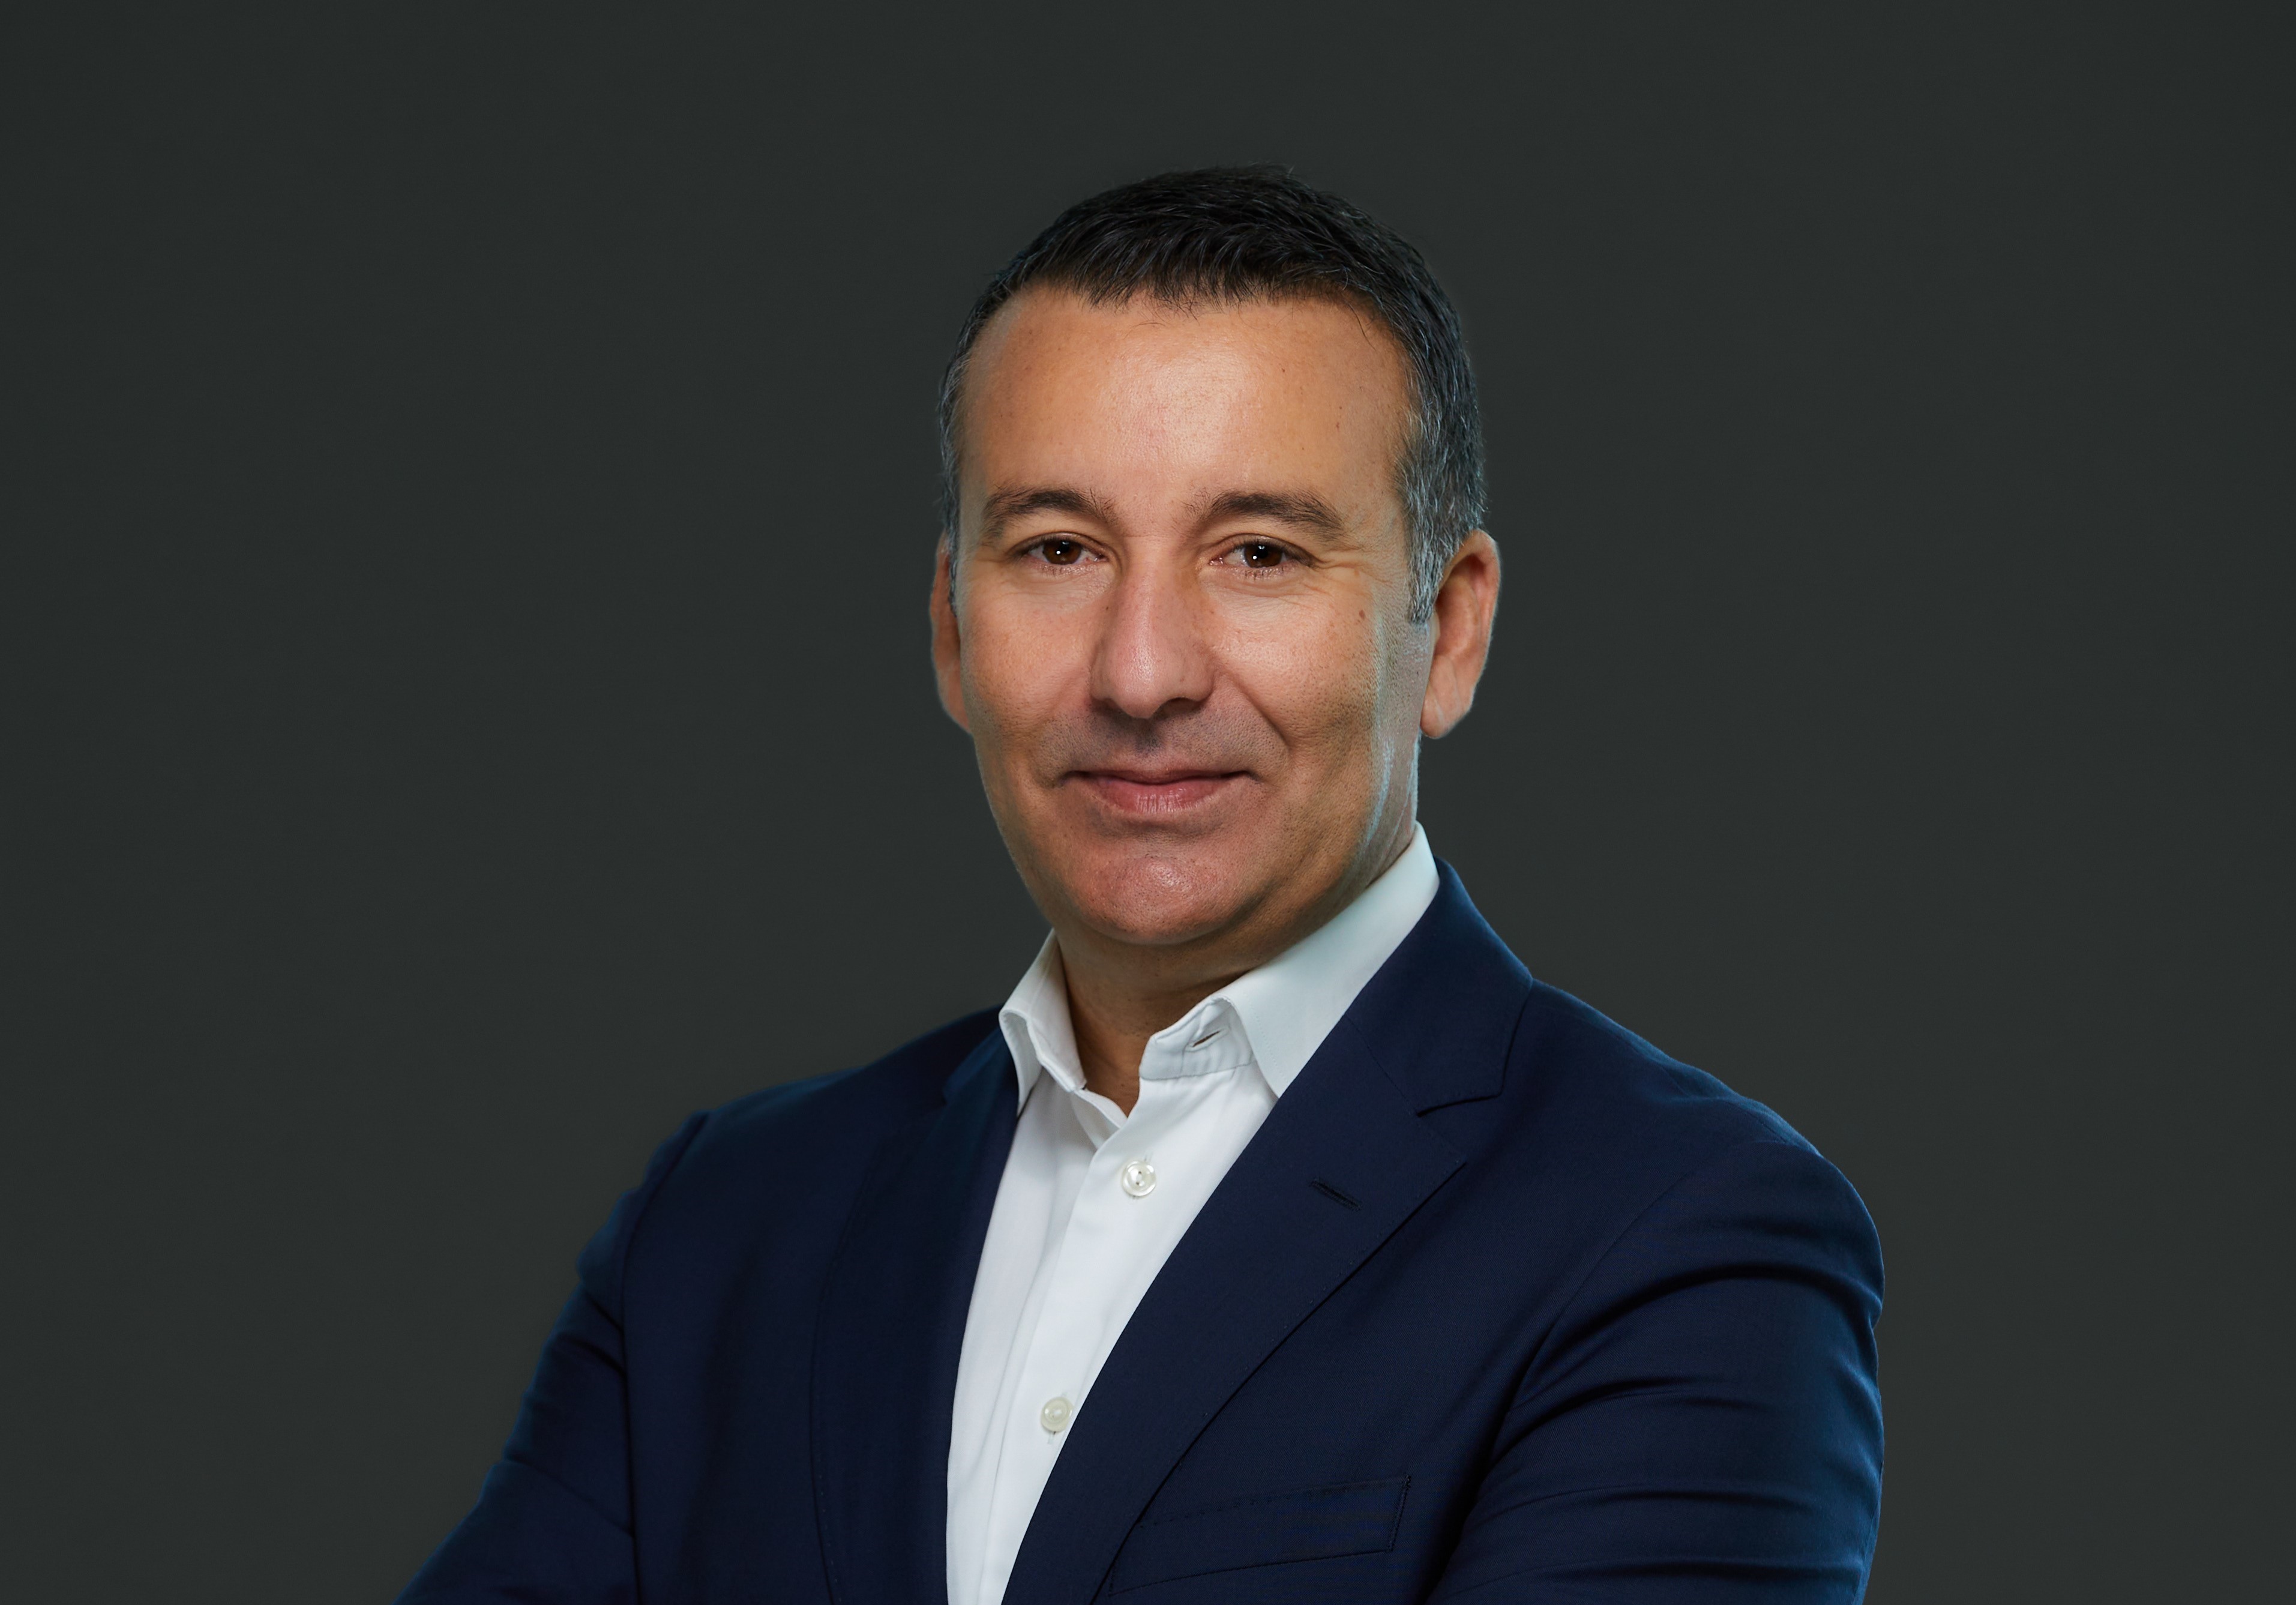 Karim Cheltout Regional Vice President Development for Marriott International EMEA